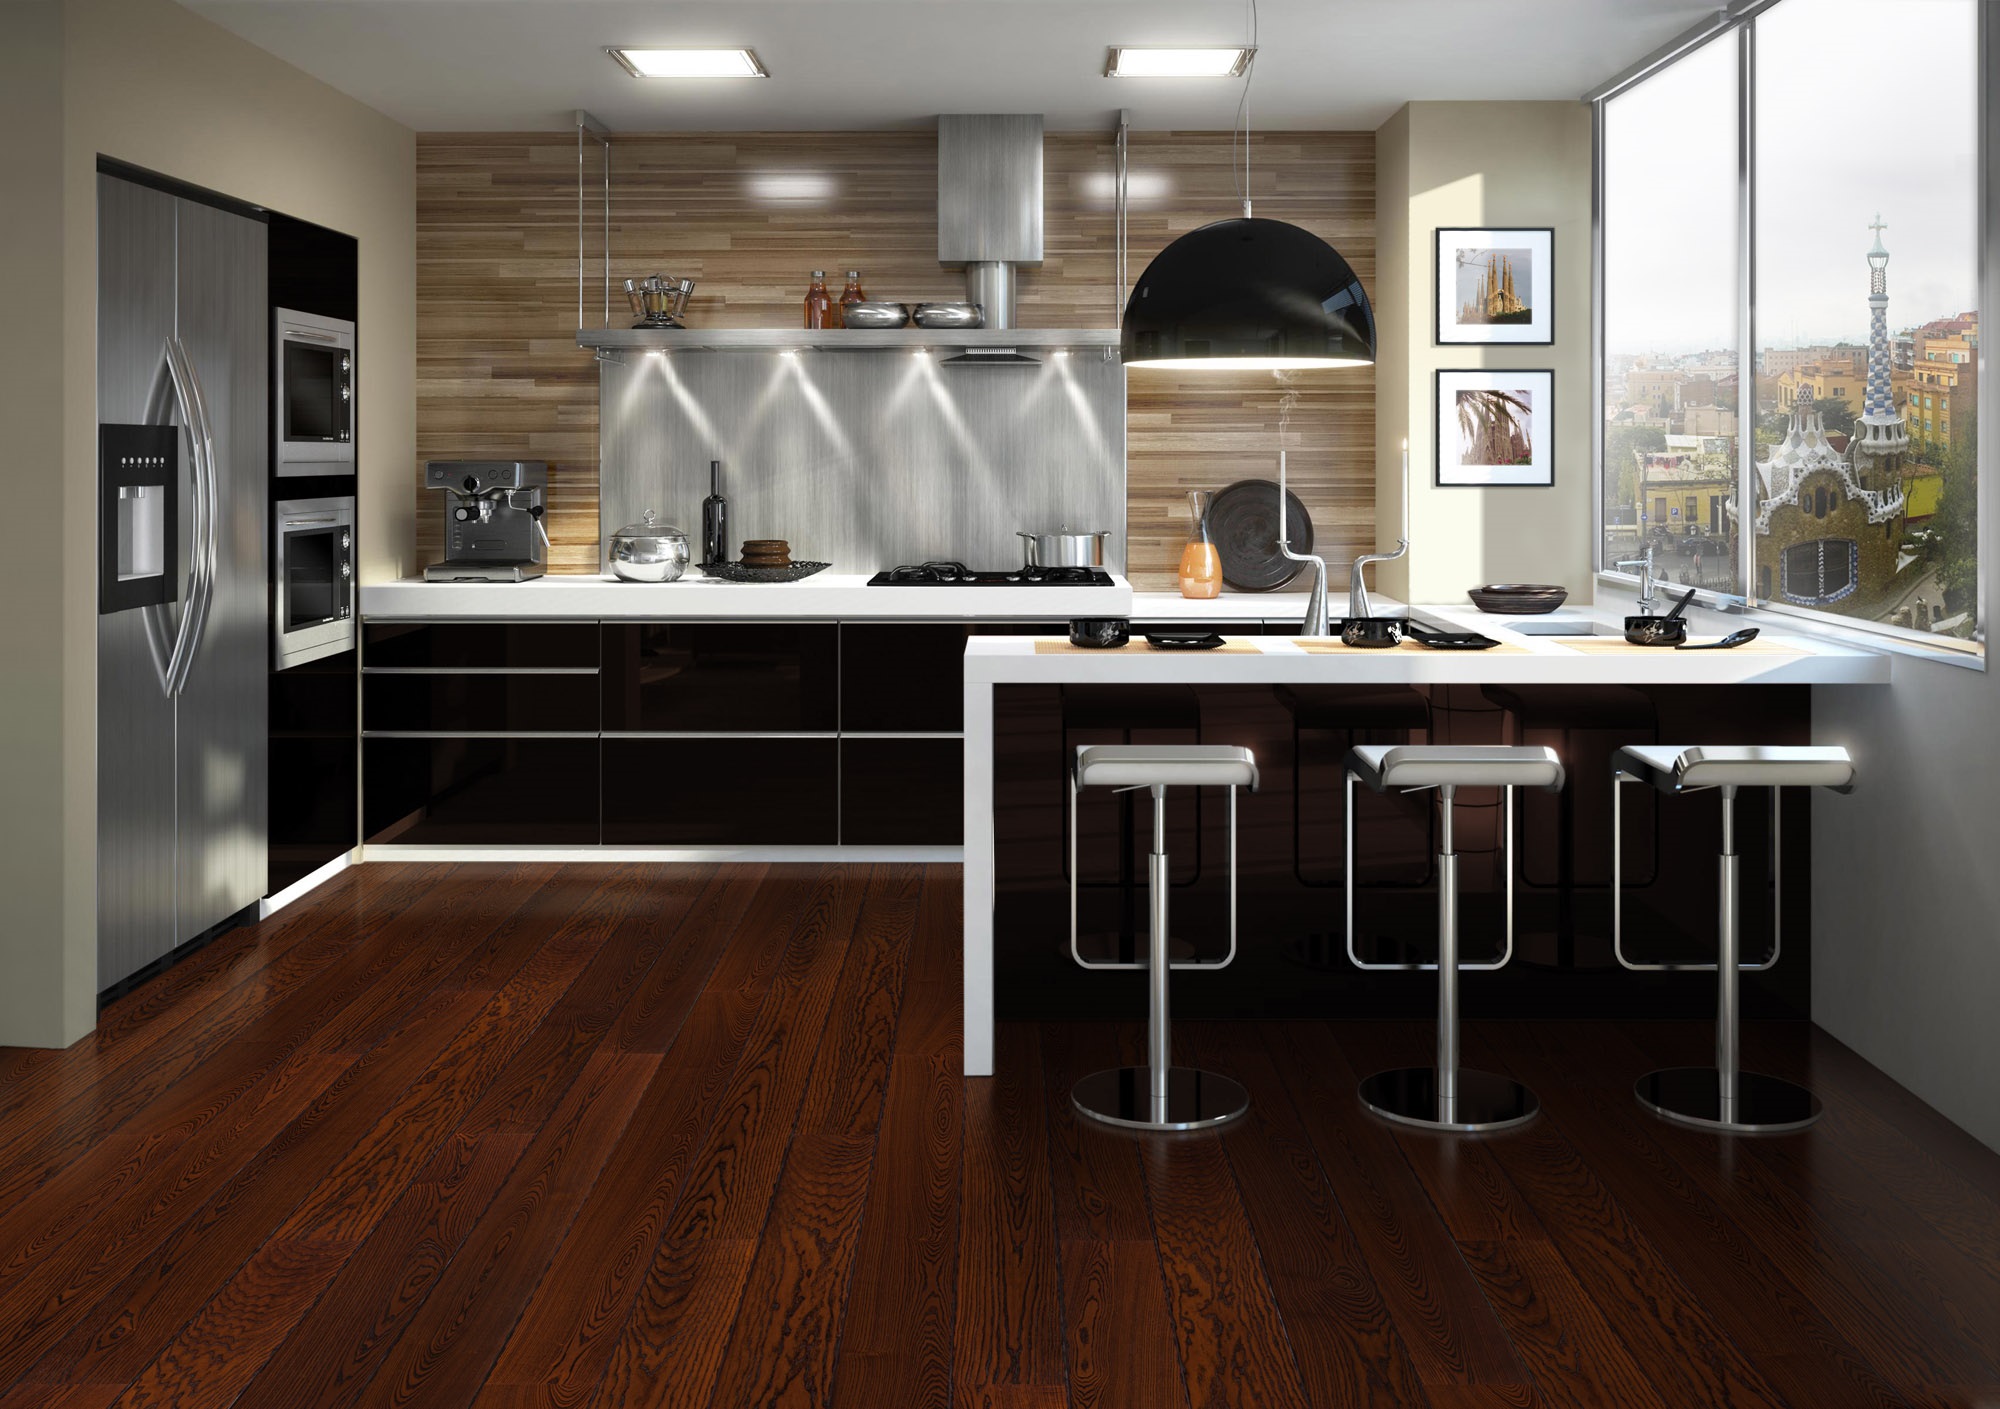 Bucătărie cu mobilă neagră, accesorii metalice și pardoseală cu aspect de lemn de cires